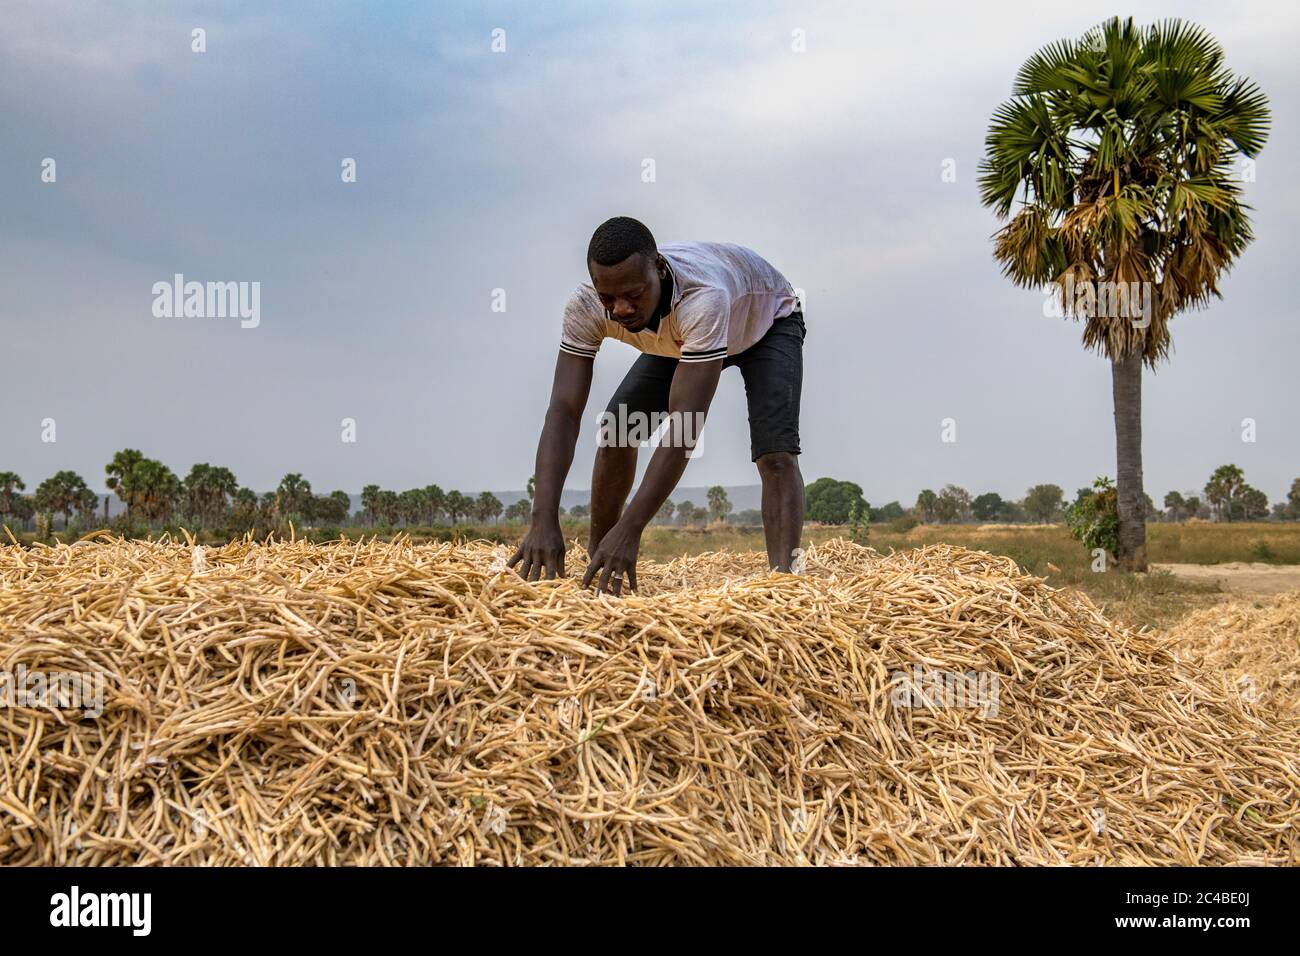 Récolte de haricots dans la province de savanes, au nord du togo Banque D'Images